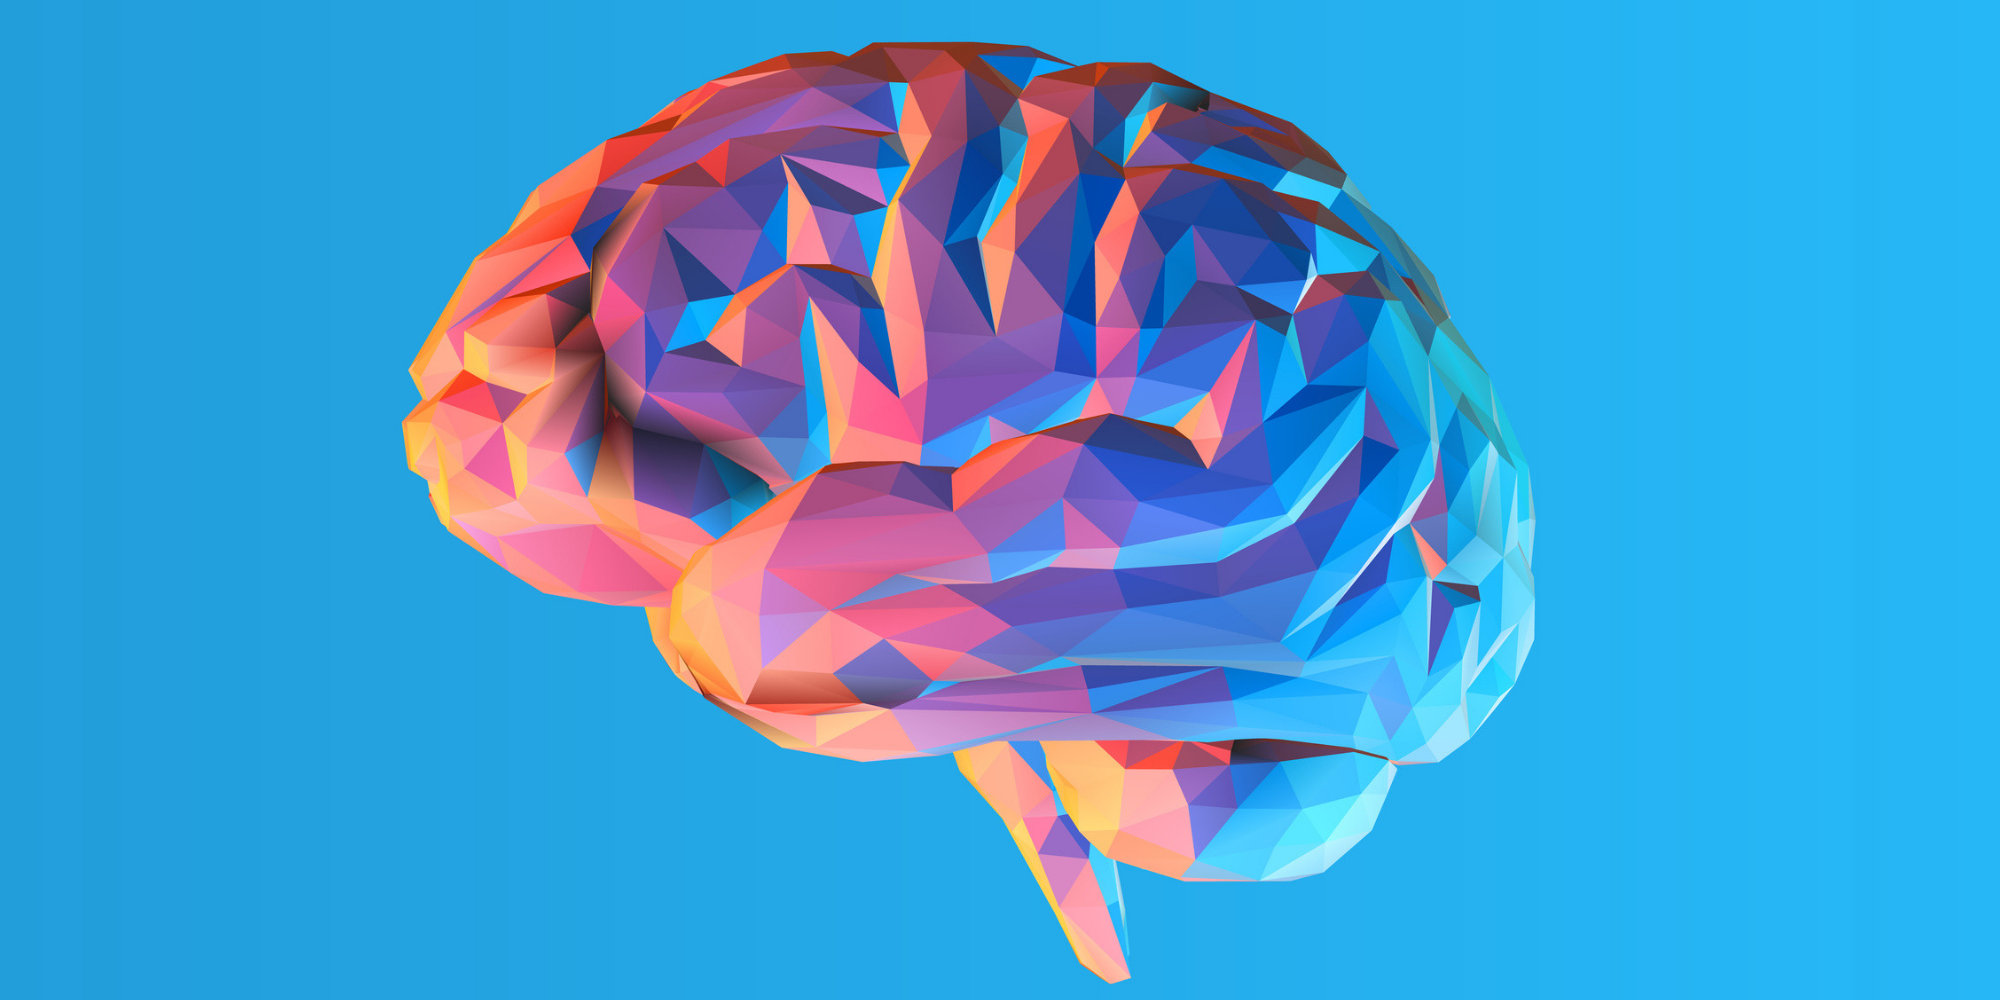 مهام الجزء الايمن من الدماغ يعمل بشكل اكبر عند اجراء اختبارات الذكاء